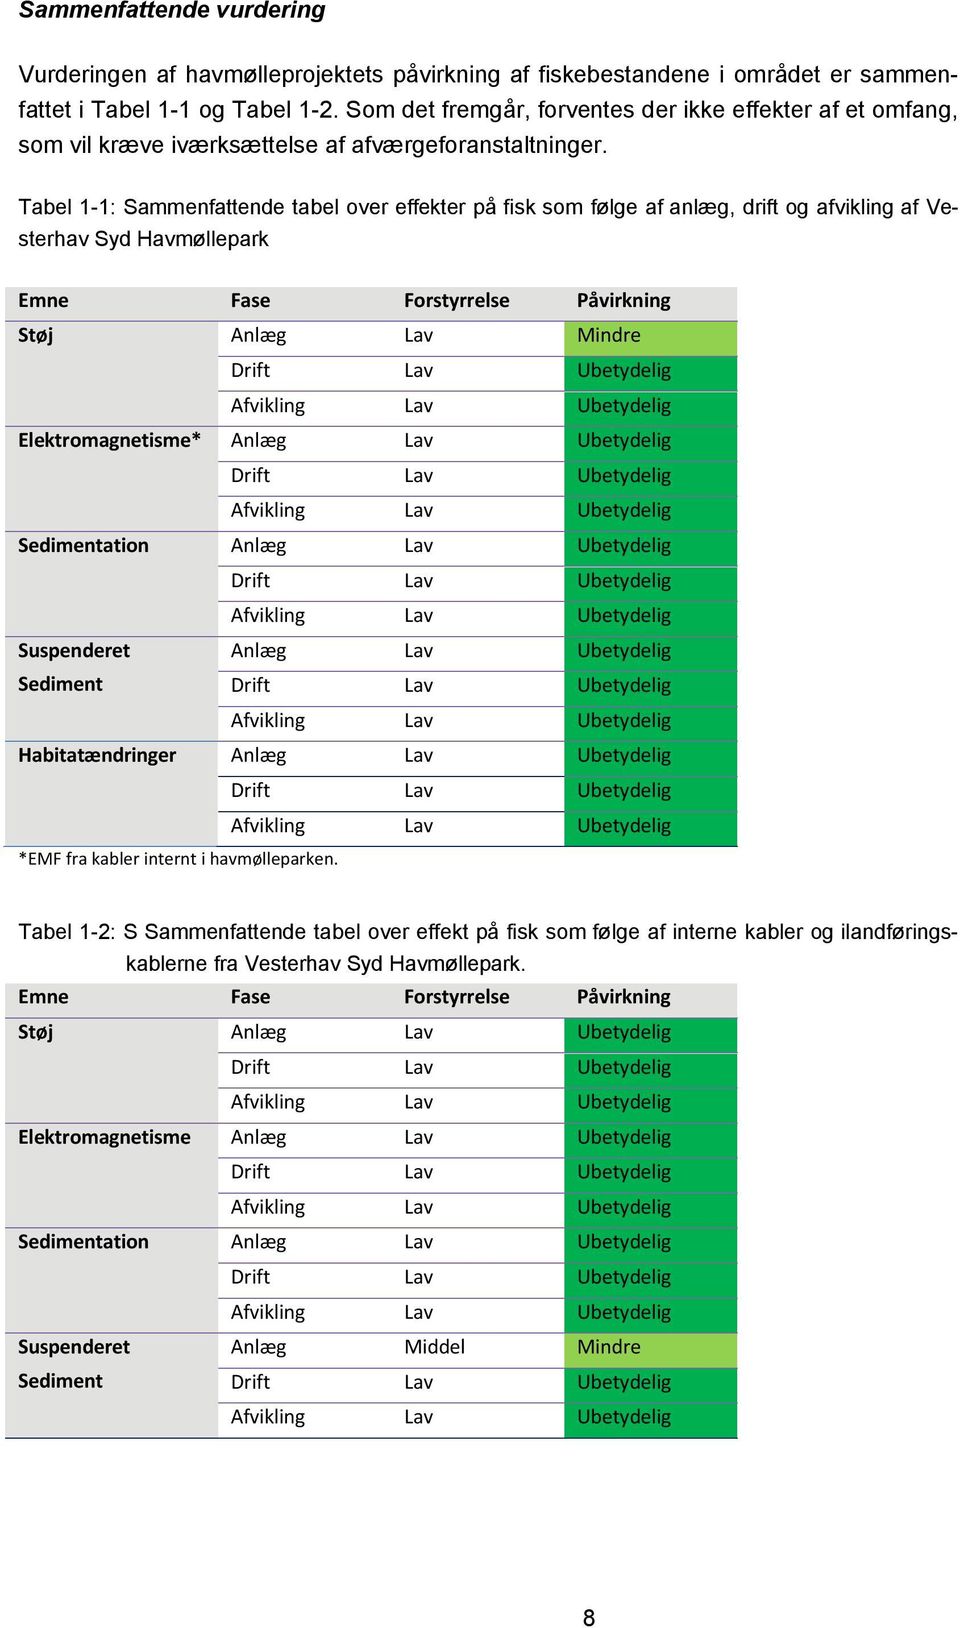 Tabel 1-1: Sammenfattende tabel over effekter på fisk som følge af anlæg, drift og afvikling af Vesterhav Syd Havmøllepark Emne Fase Forstyrrelse Påvirkning Støj Anlæg Lav Mindre Drift Lav Ubetydelig